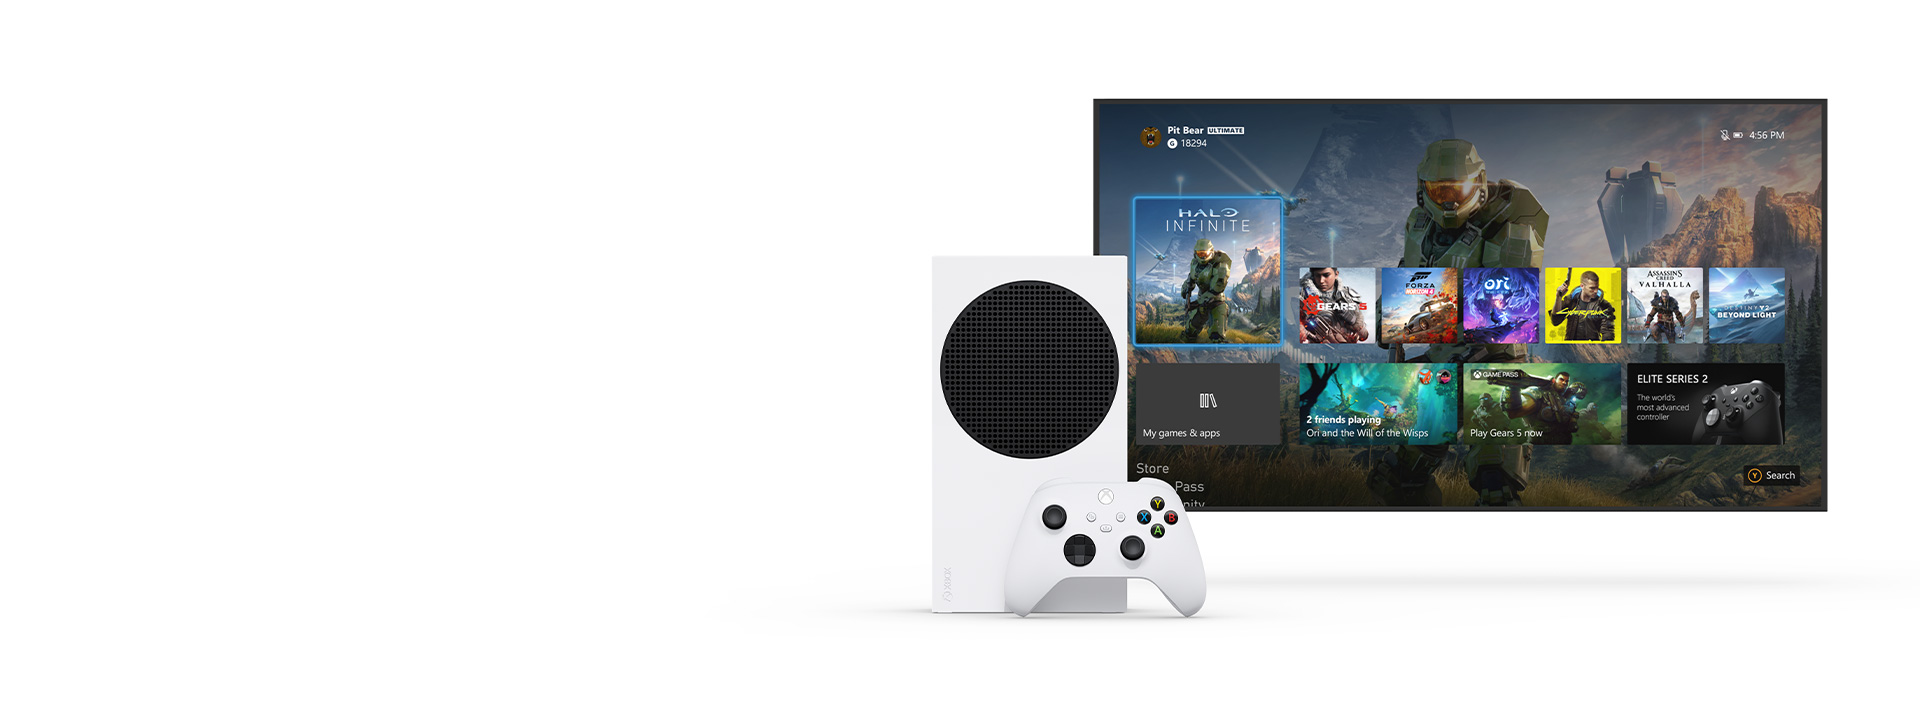 Xbox Series S рядом с телевизором, на экране которого отображается новая панель управления Xbox.